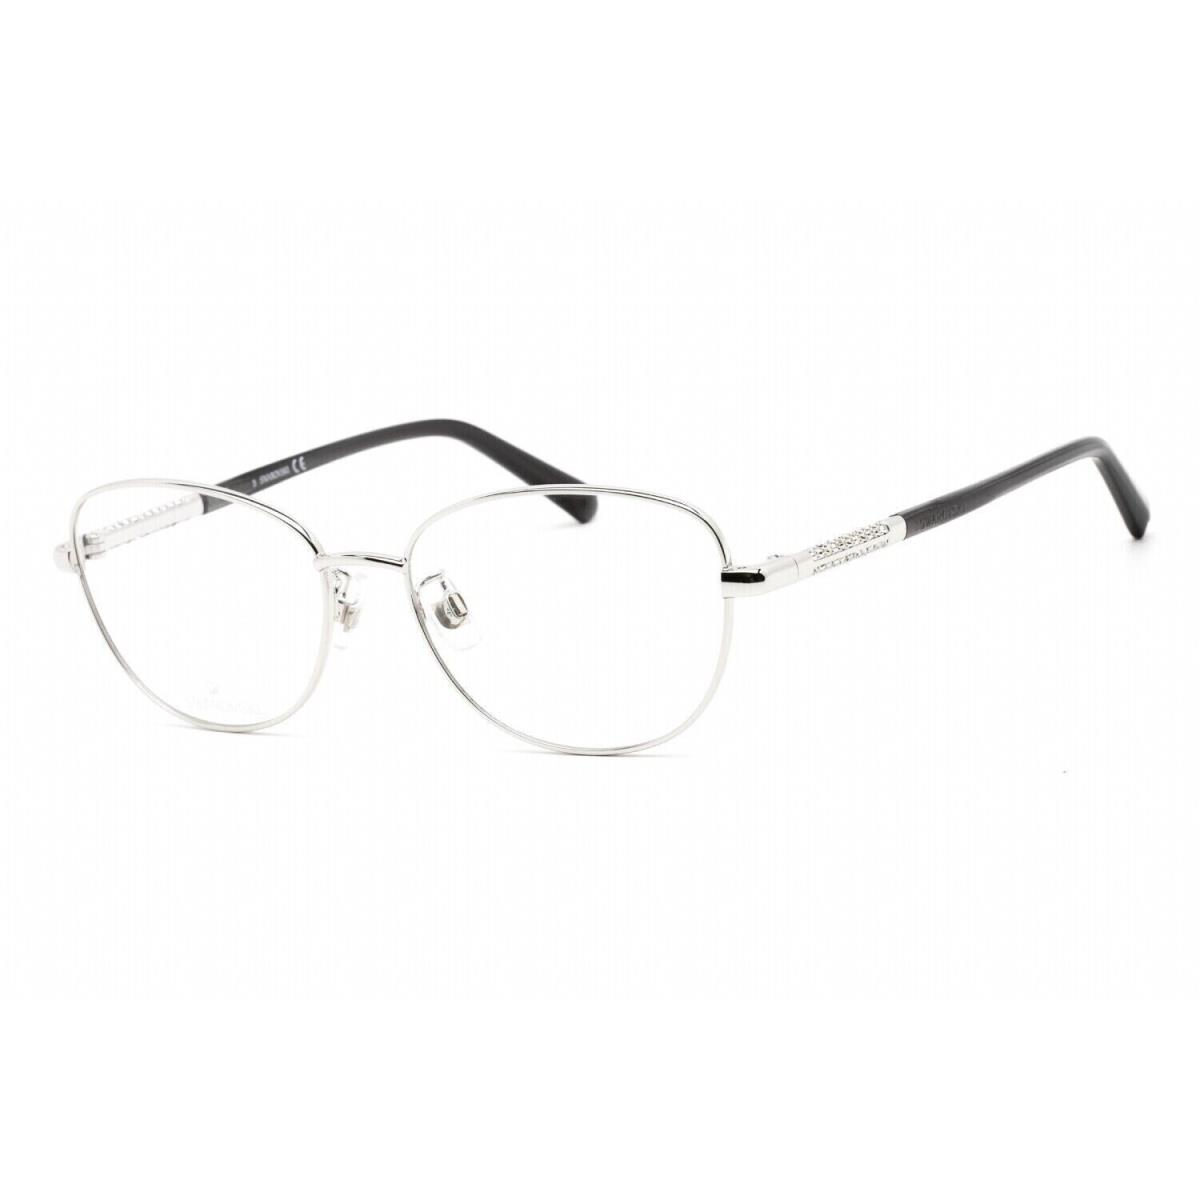 Swarovski SK5386 H 016 Round Shiny Palladium Eyeglasses